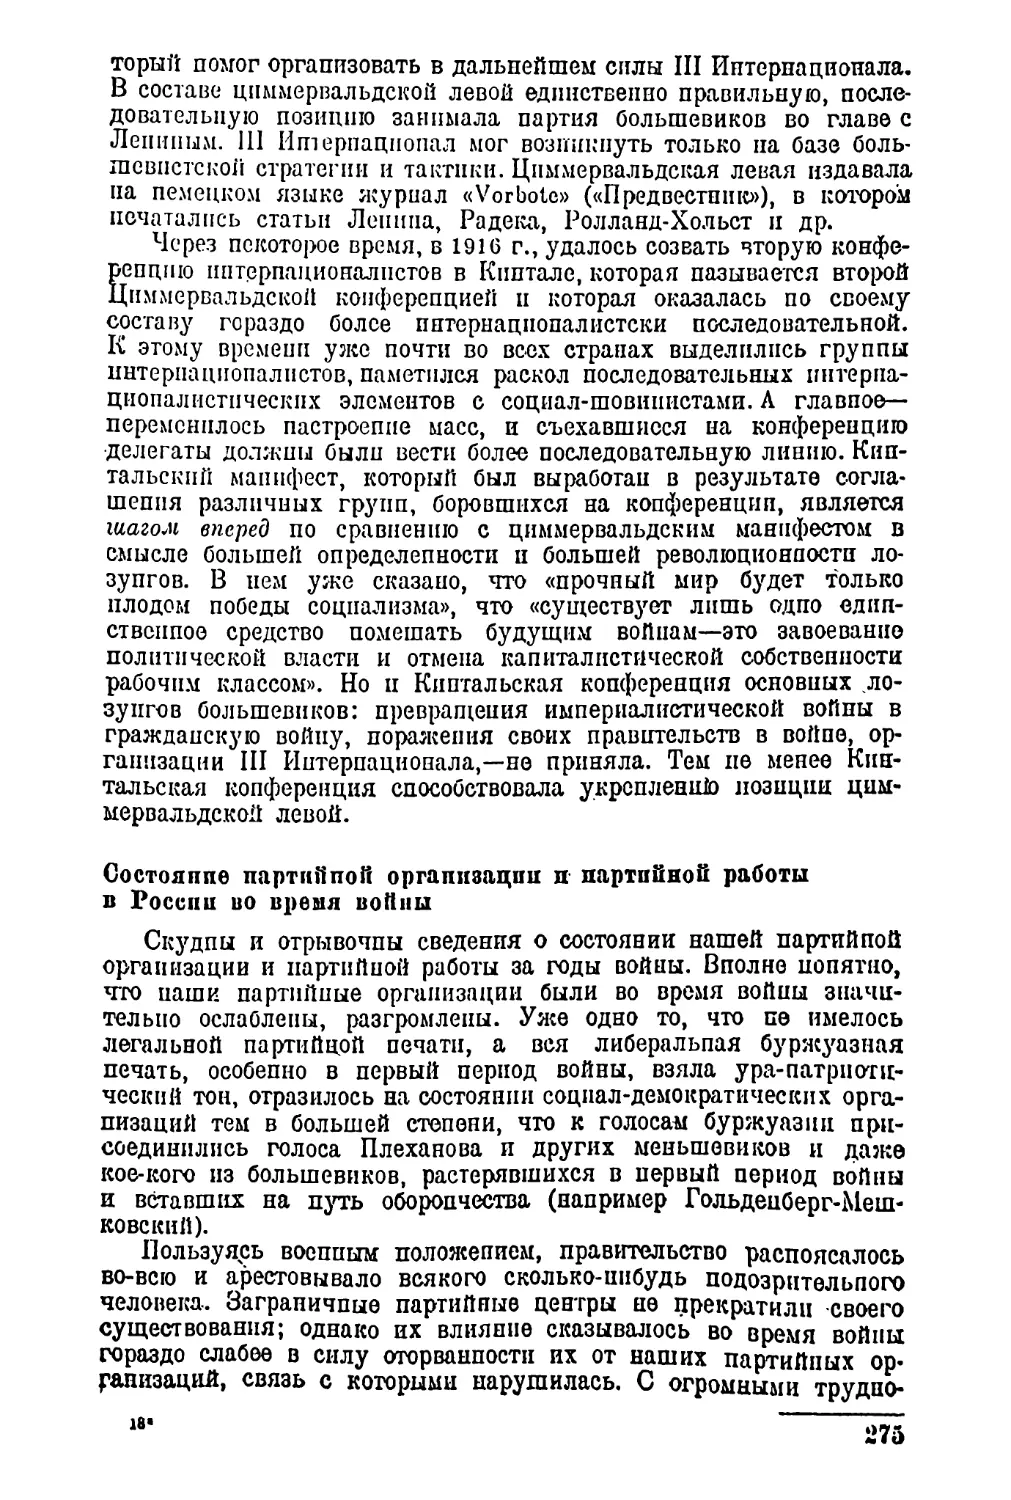 Состояние партийной организации и партийной работы в России во время войны